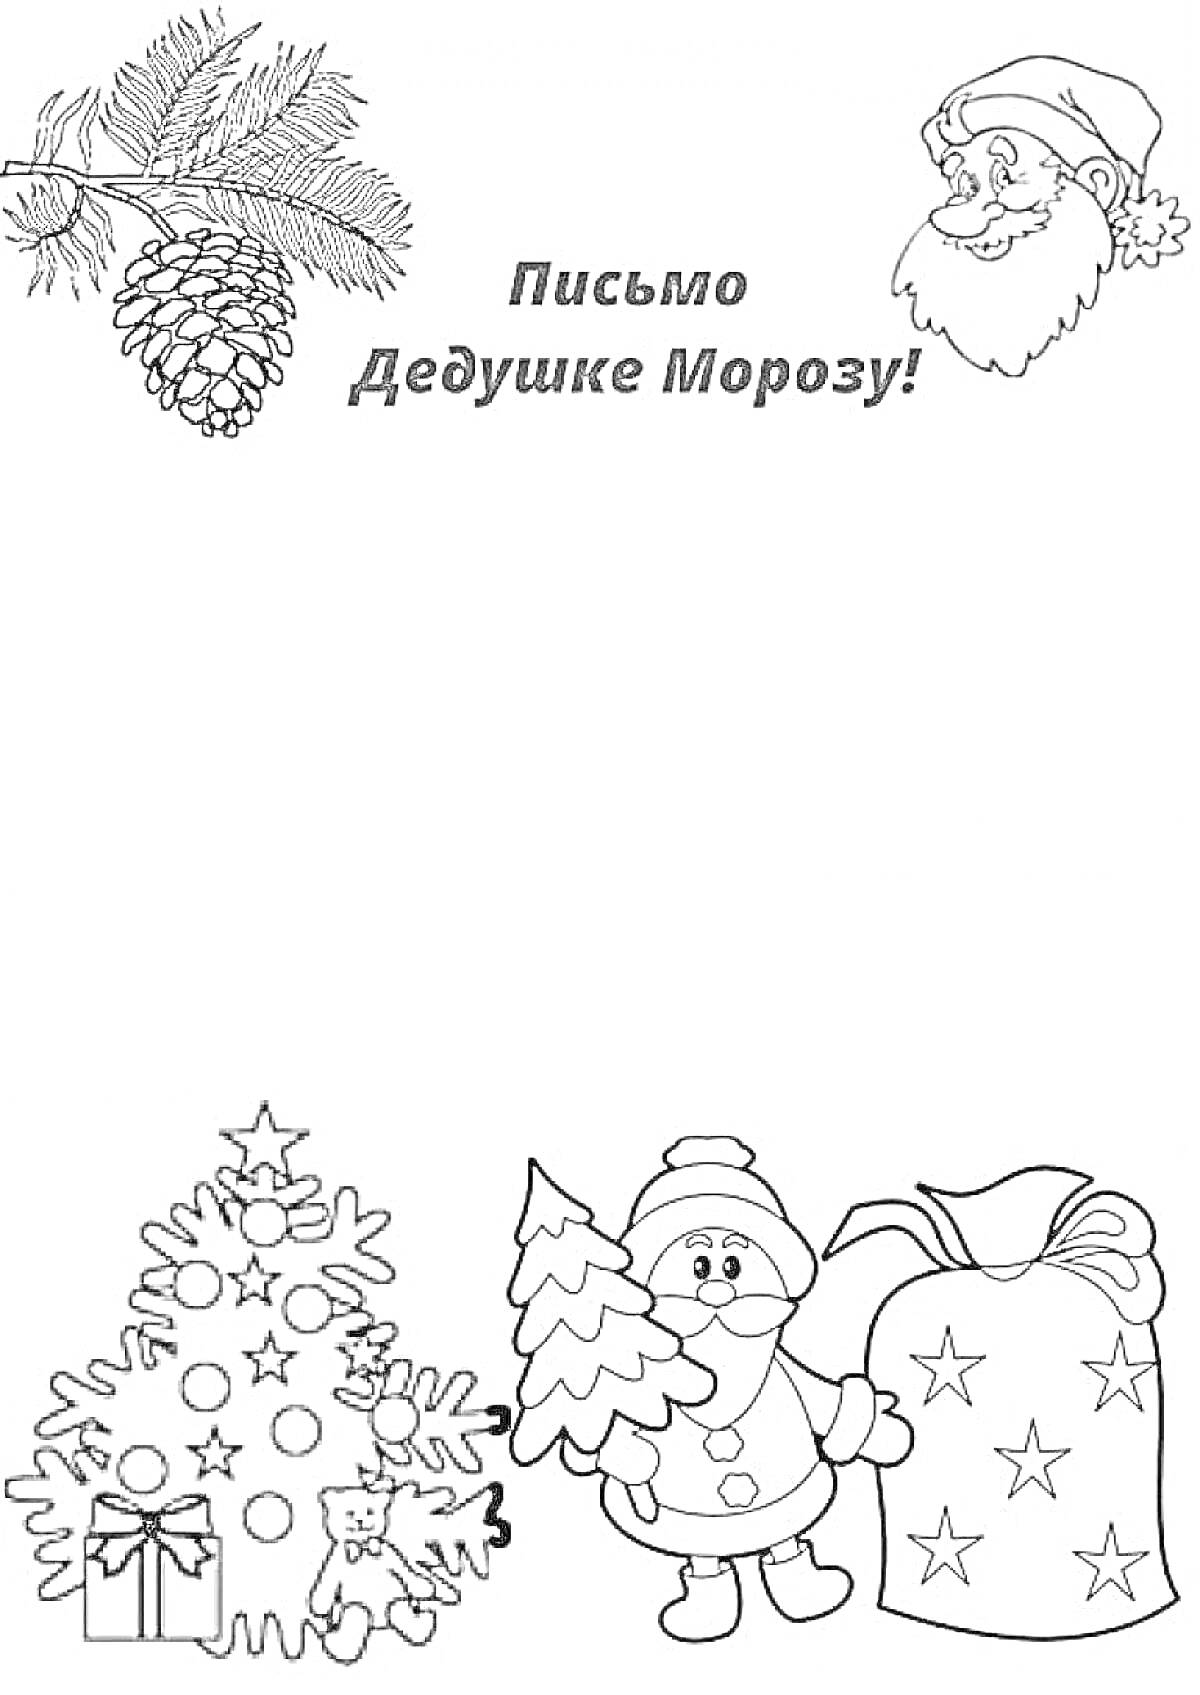 Раскраска Письмо Дедушке Морозу с изображением еловой ветки с шишкой, Дедушки Мороза, новогодней елки, снеговика с елочкой, мешка с подарками